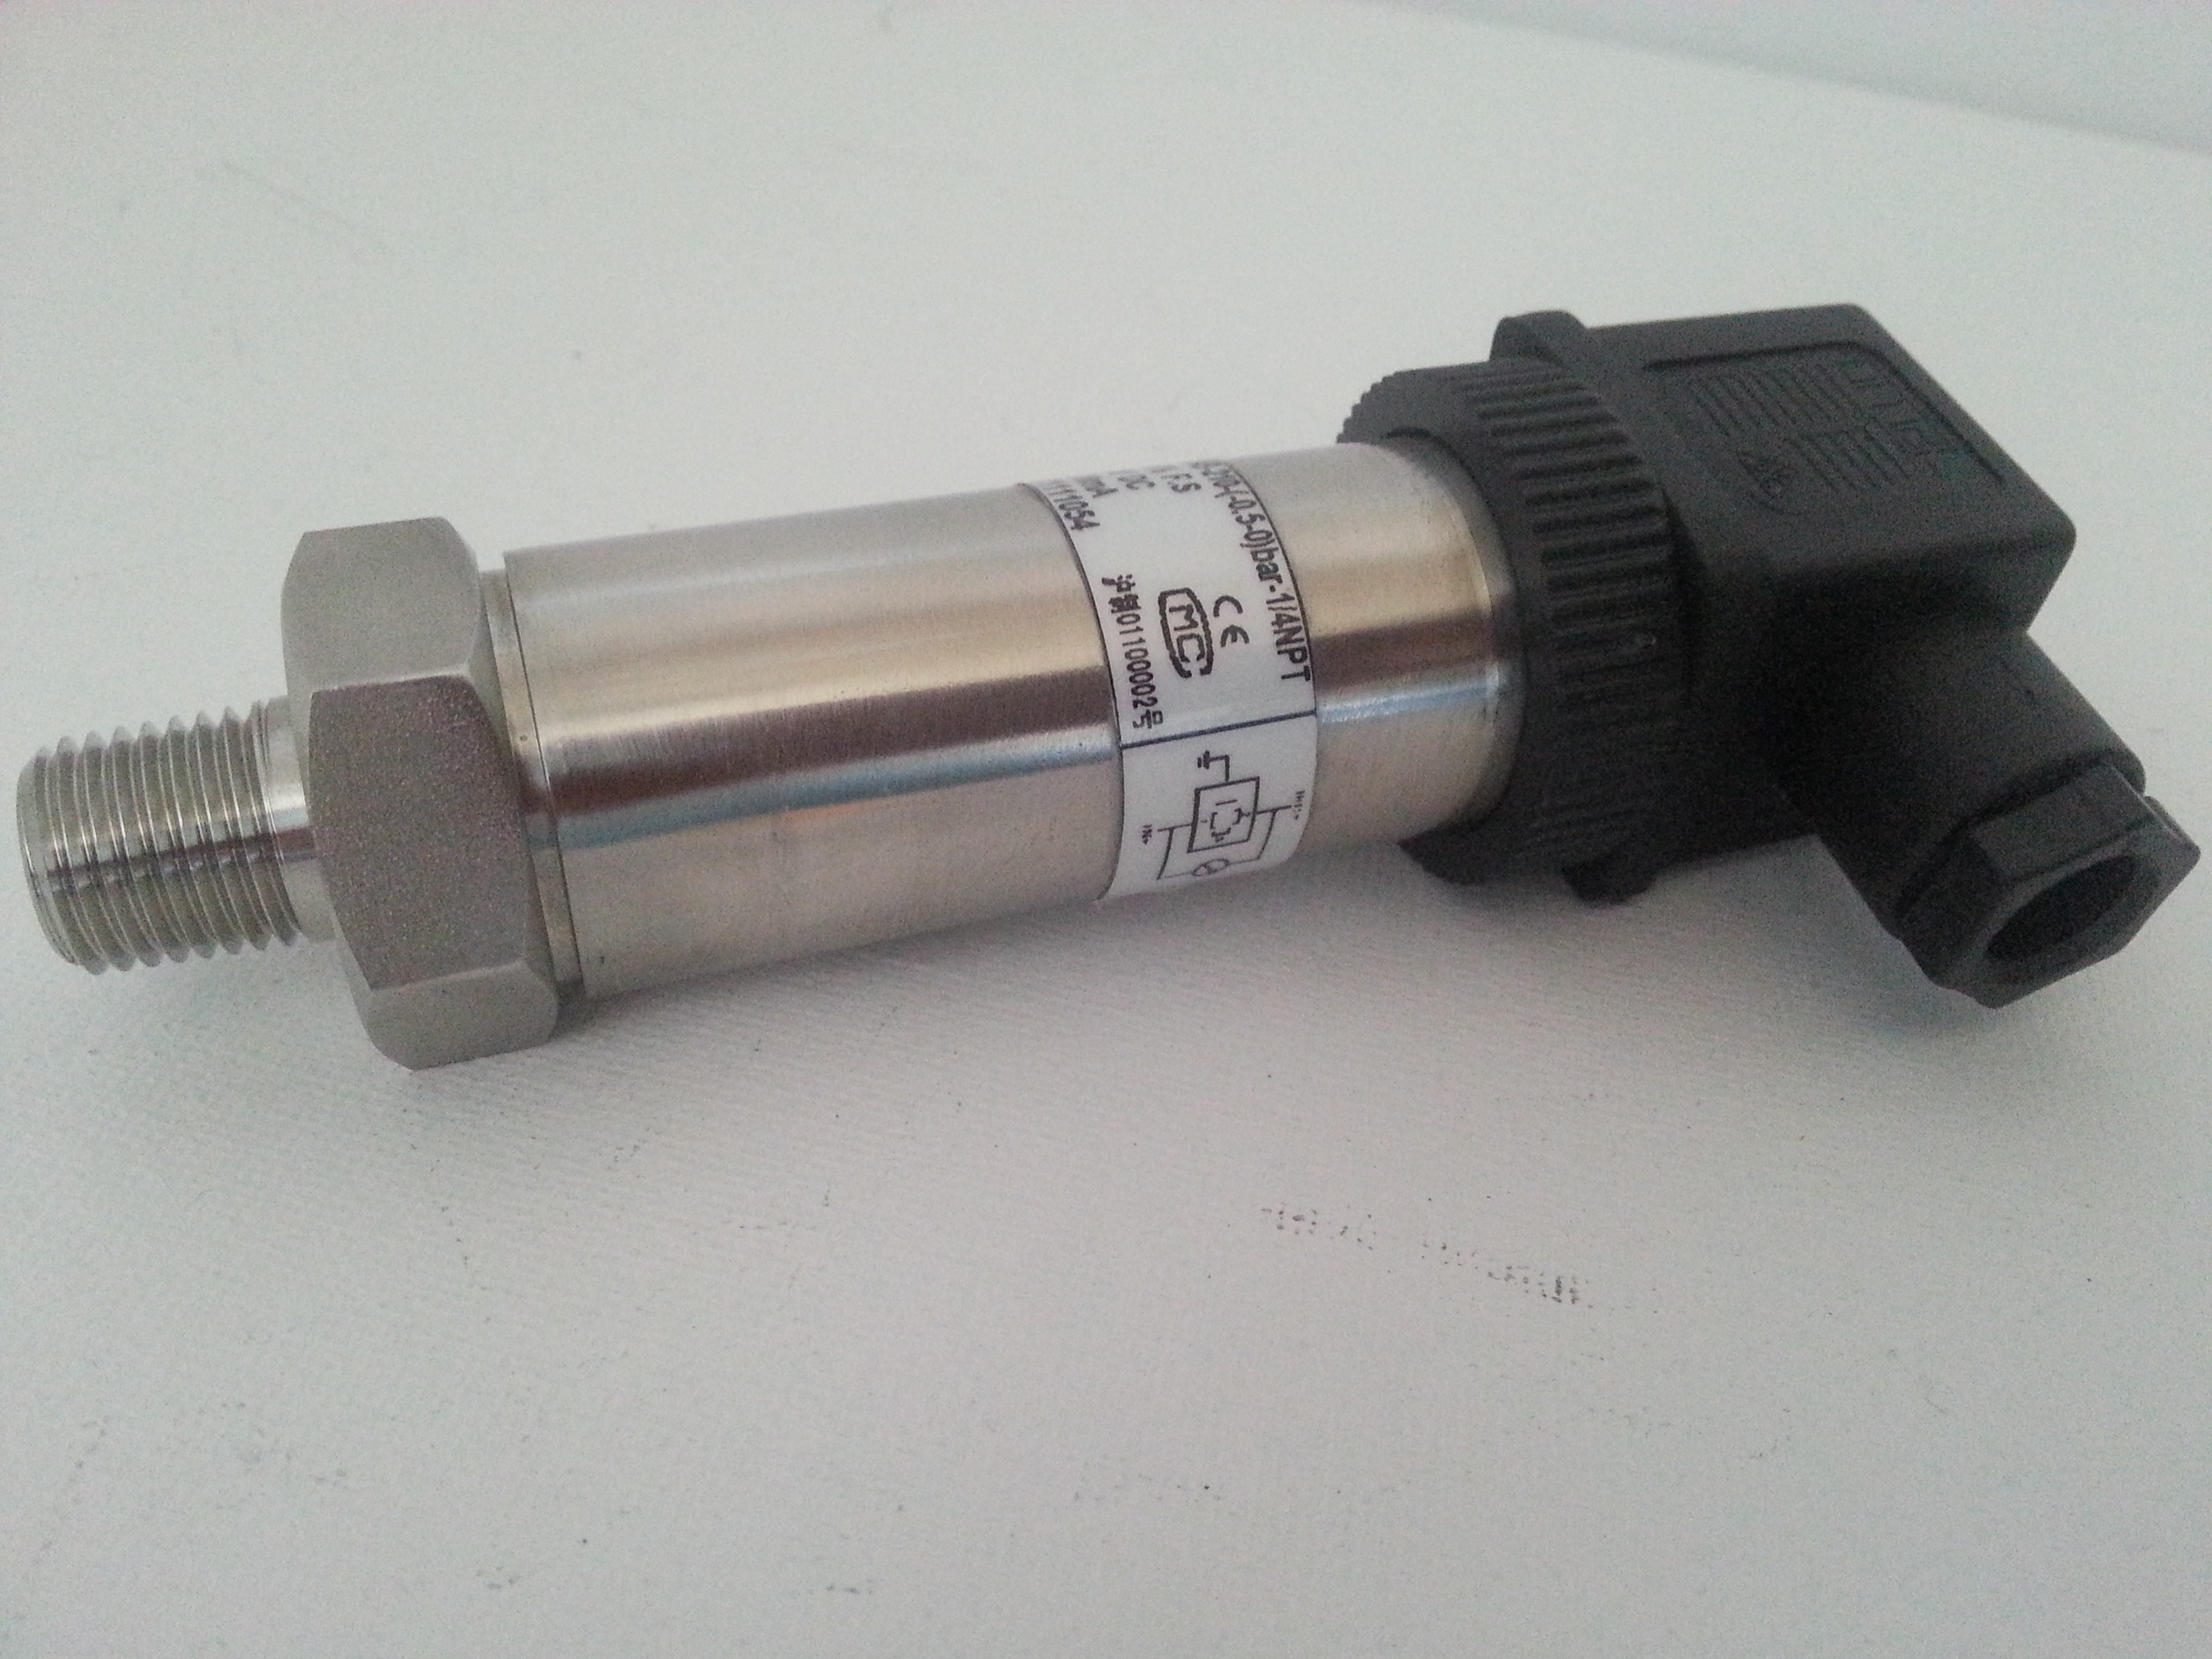 PT124B-210 Onderdruk vacuum Sensor 0- - 0,25 Bar 4-20mA.